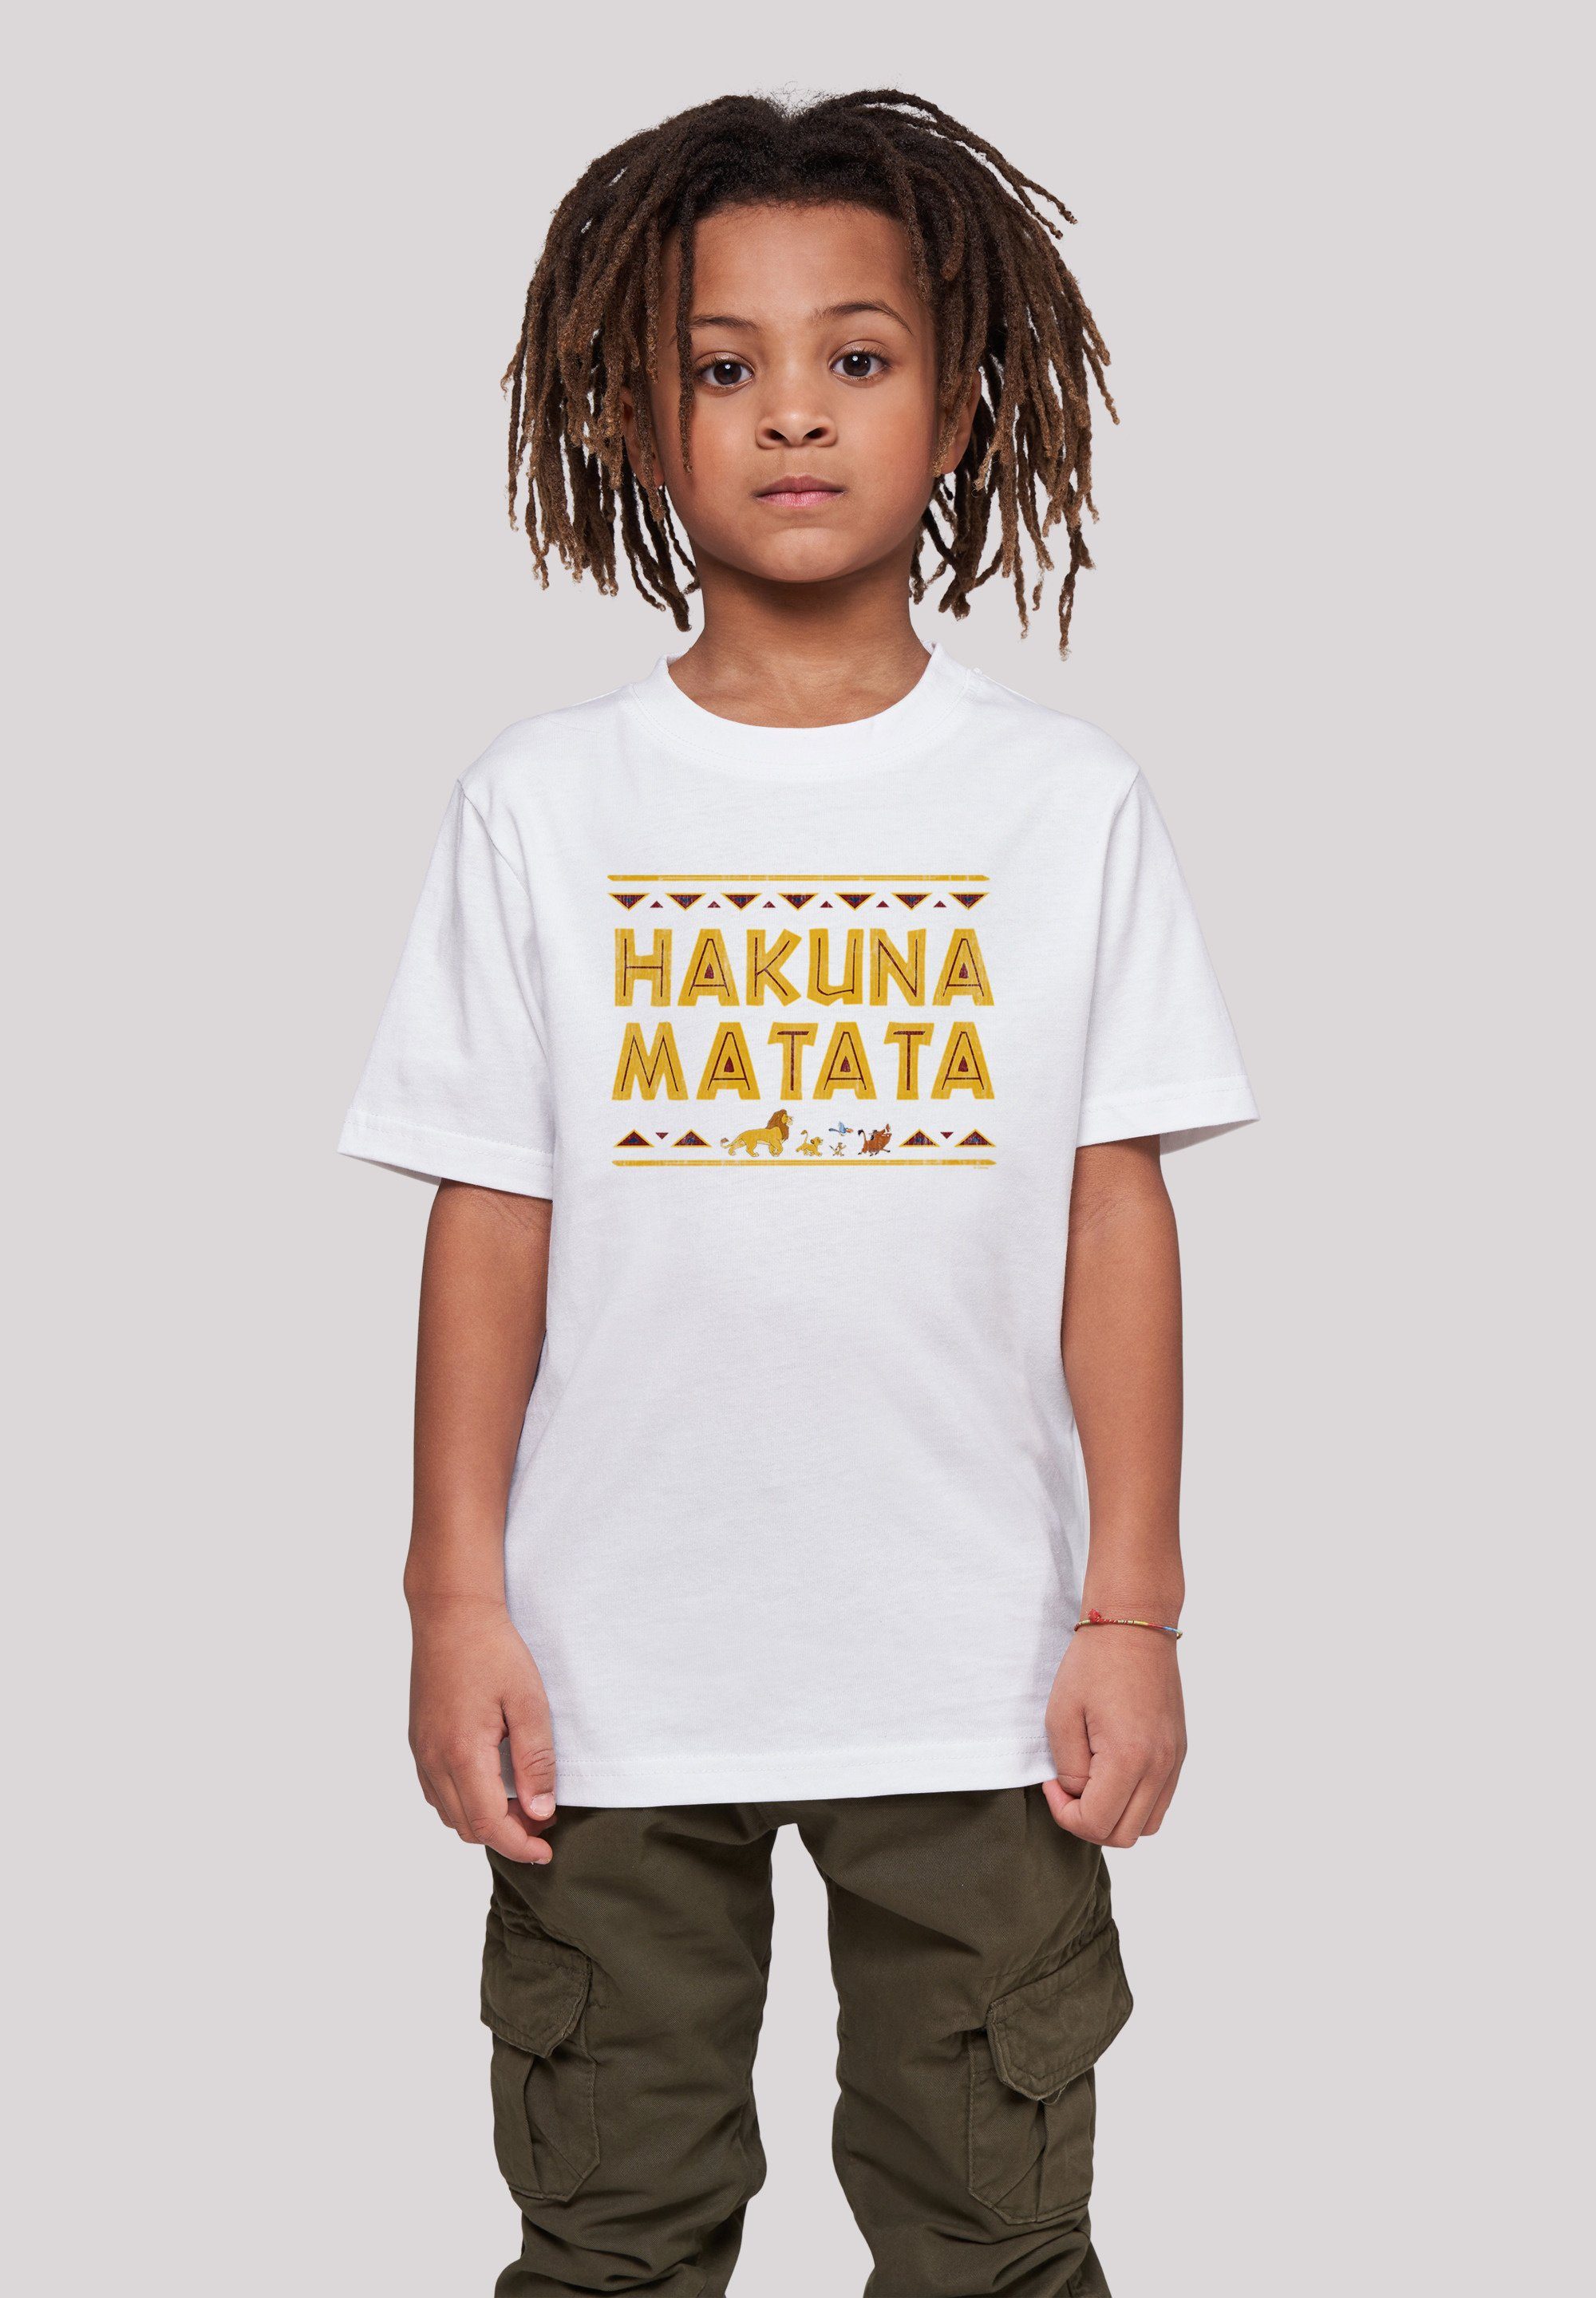 T-Shirt F4NT4STIC der Kinder,Premium Unisex Disney Hakuna Löwen Matata König Merch,Jungen,Mädchen,Bedruckt